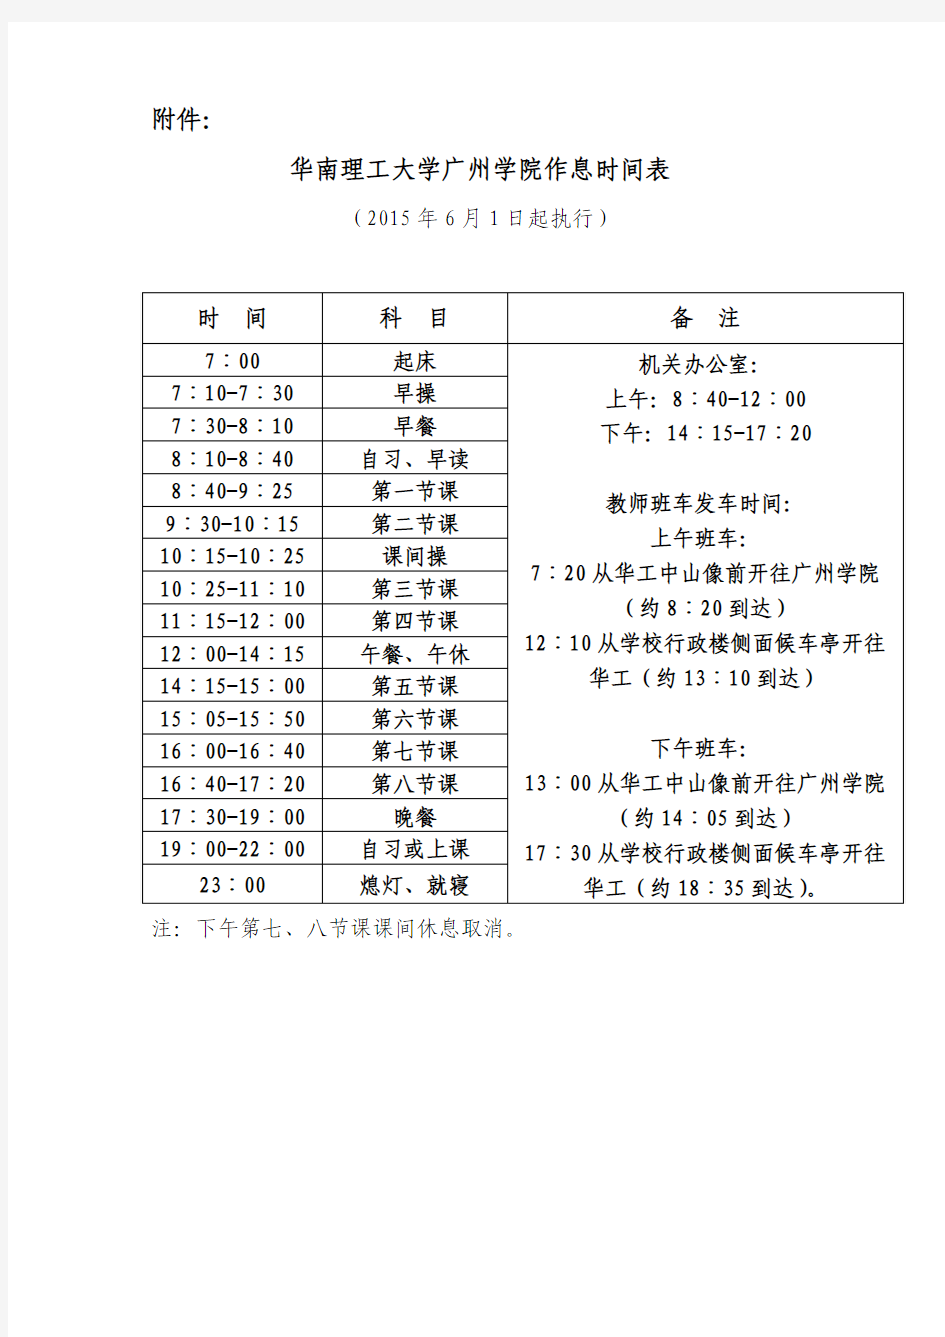 华南理工大学广州学院作息时间表